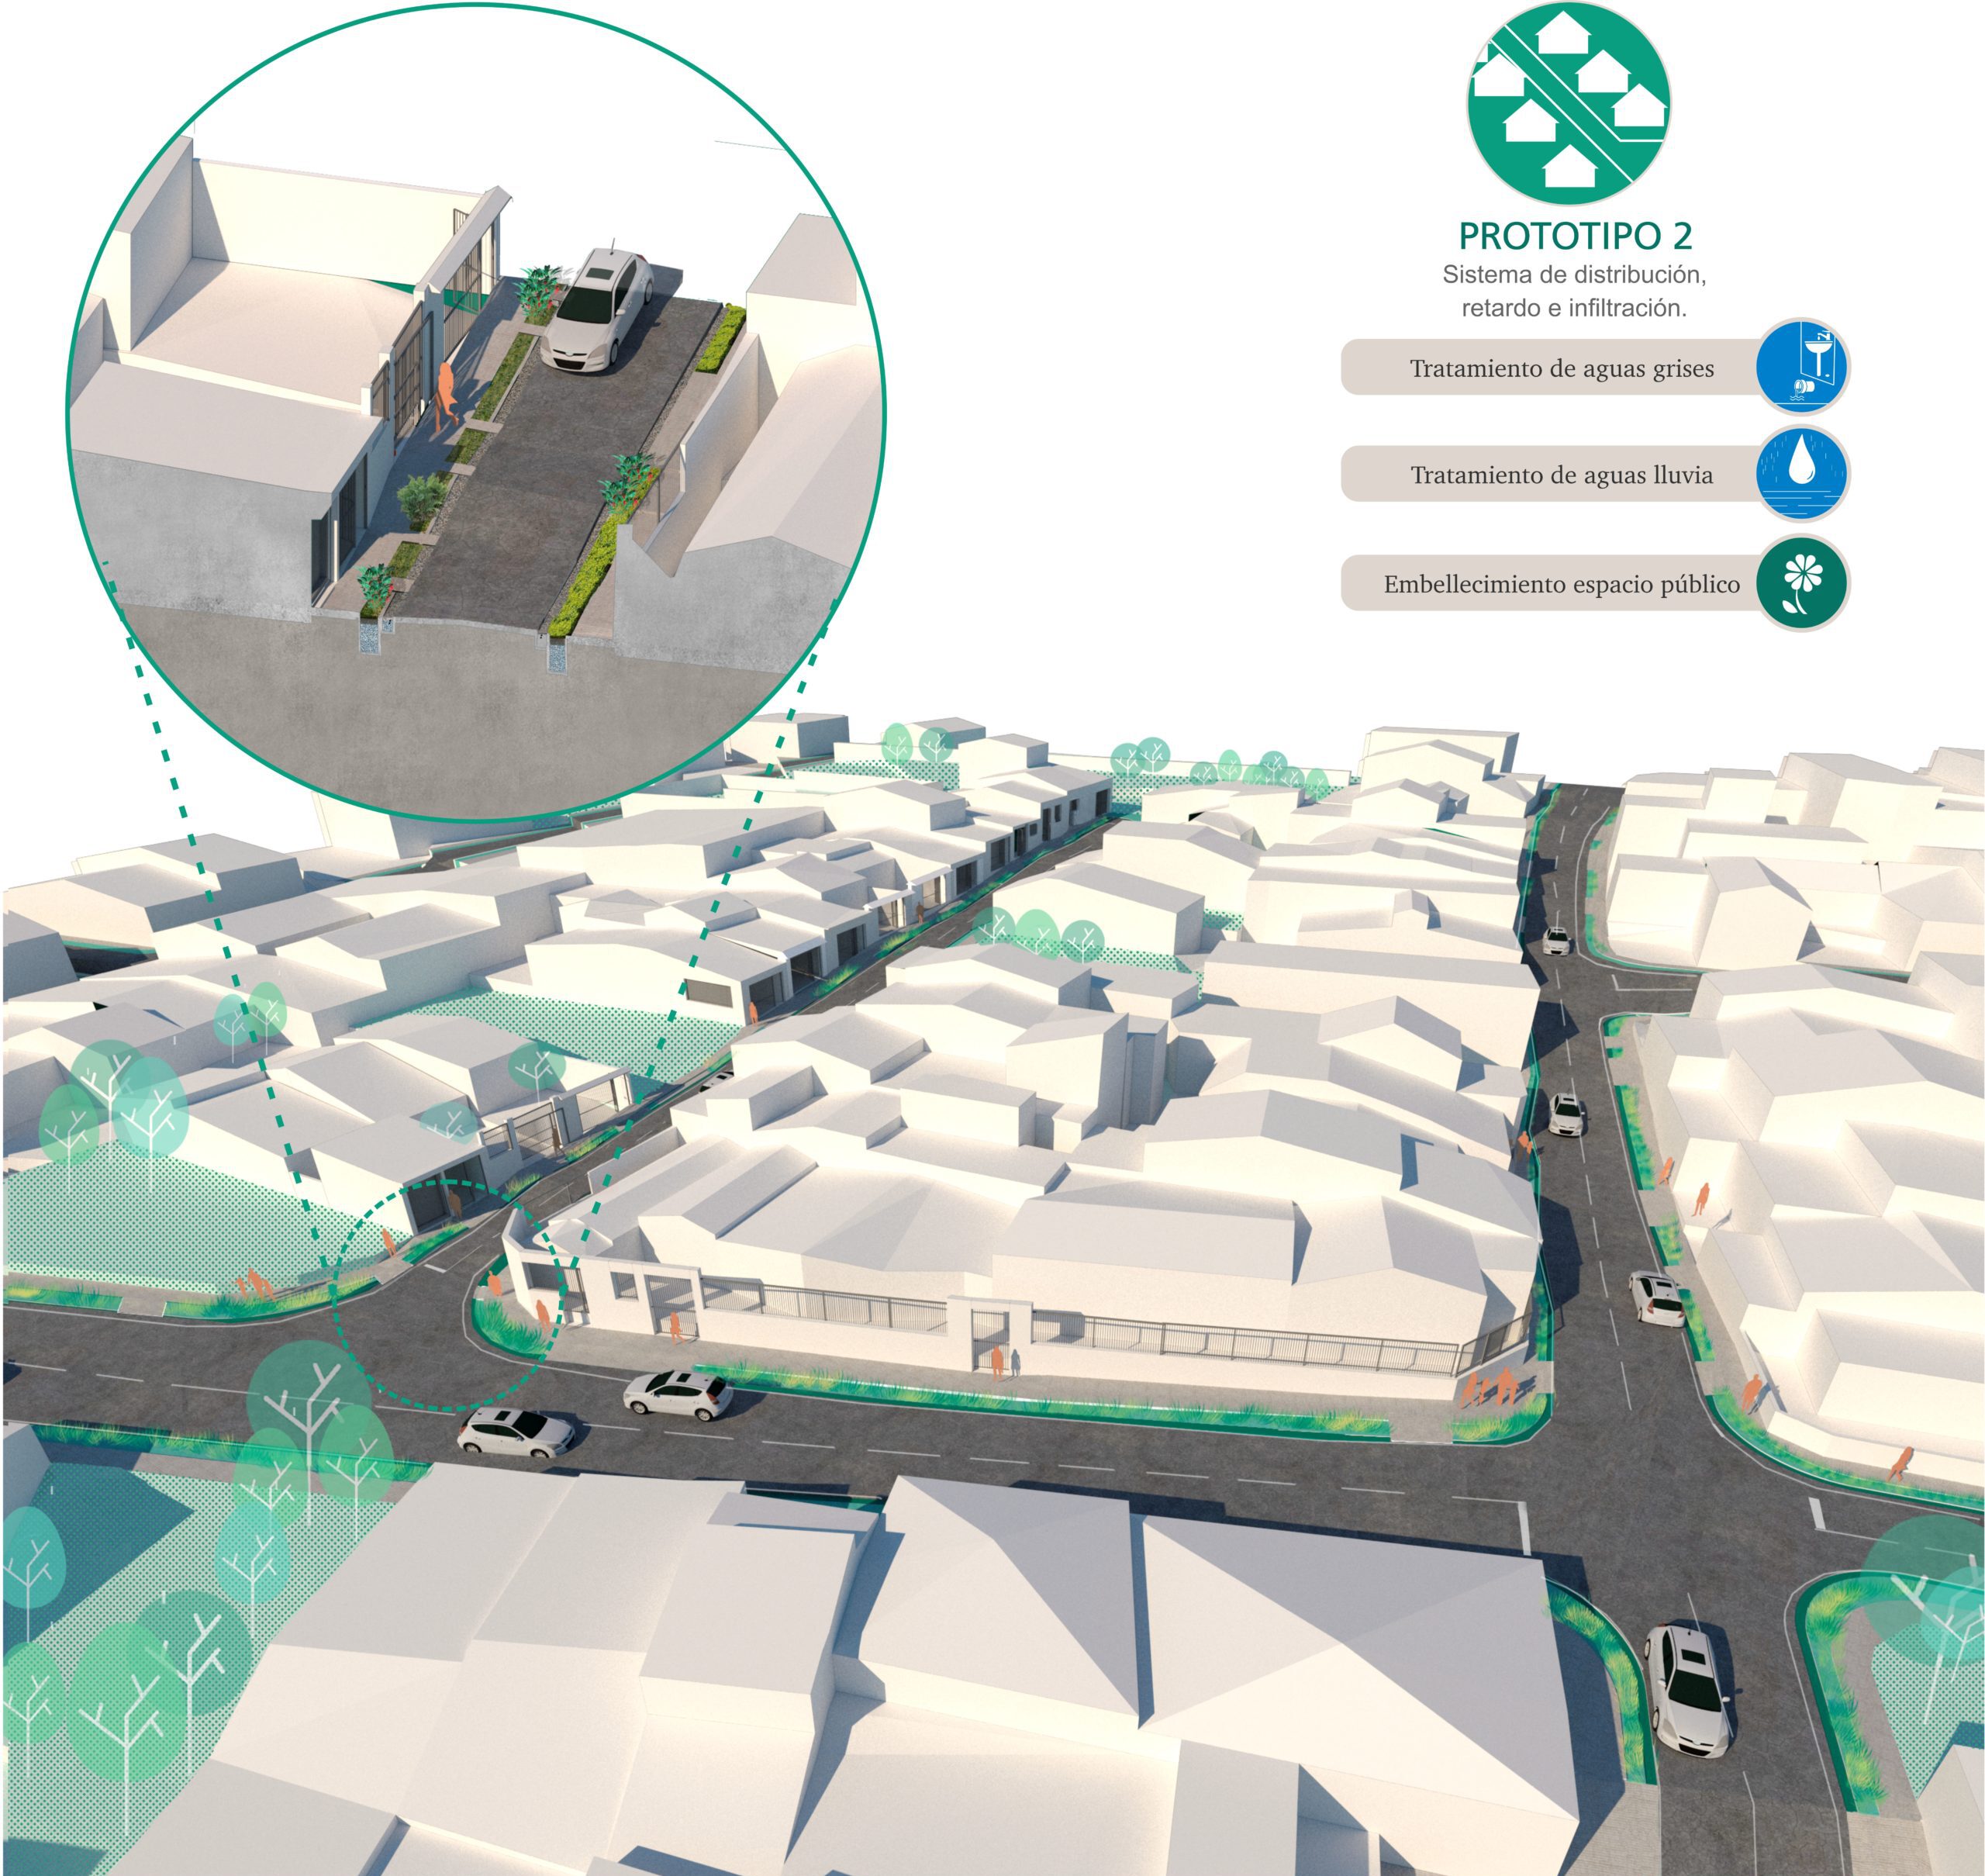 Diseñar prototipos de infraestructura verde en áreas urbanas ya desarrolladas